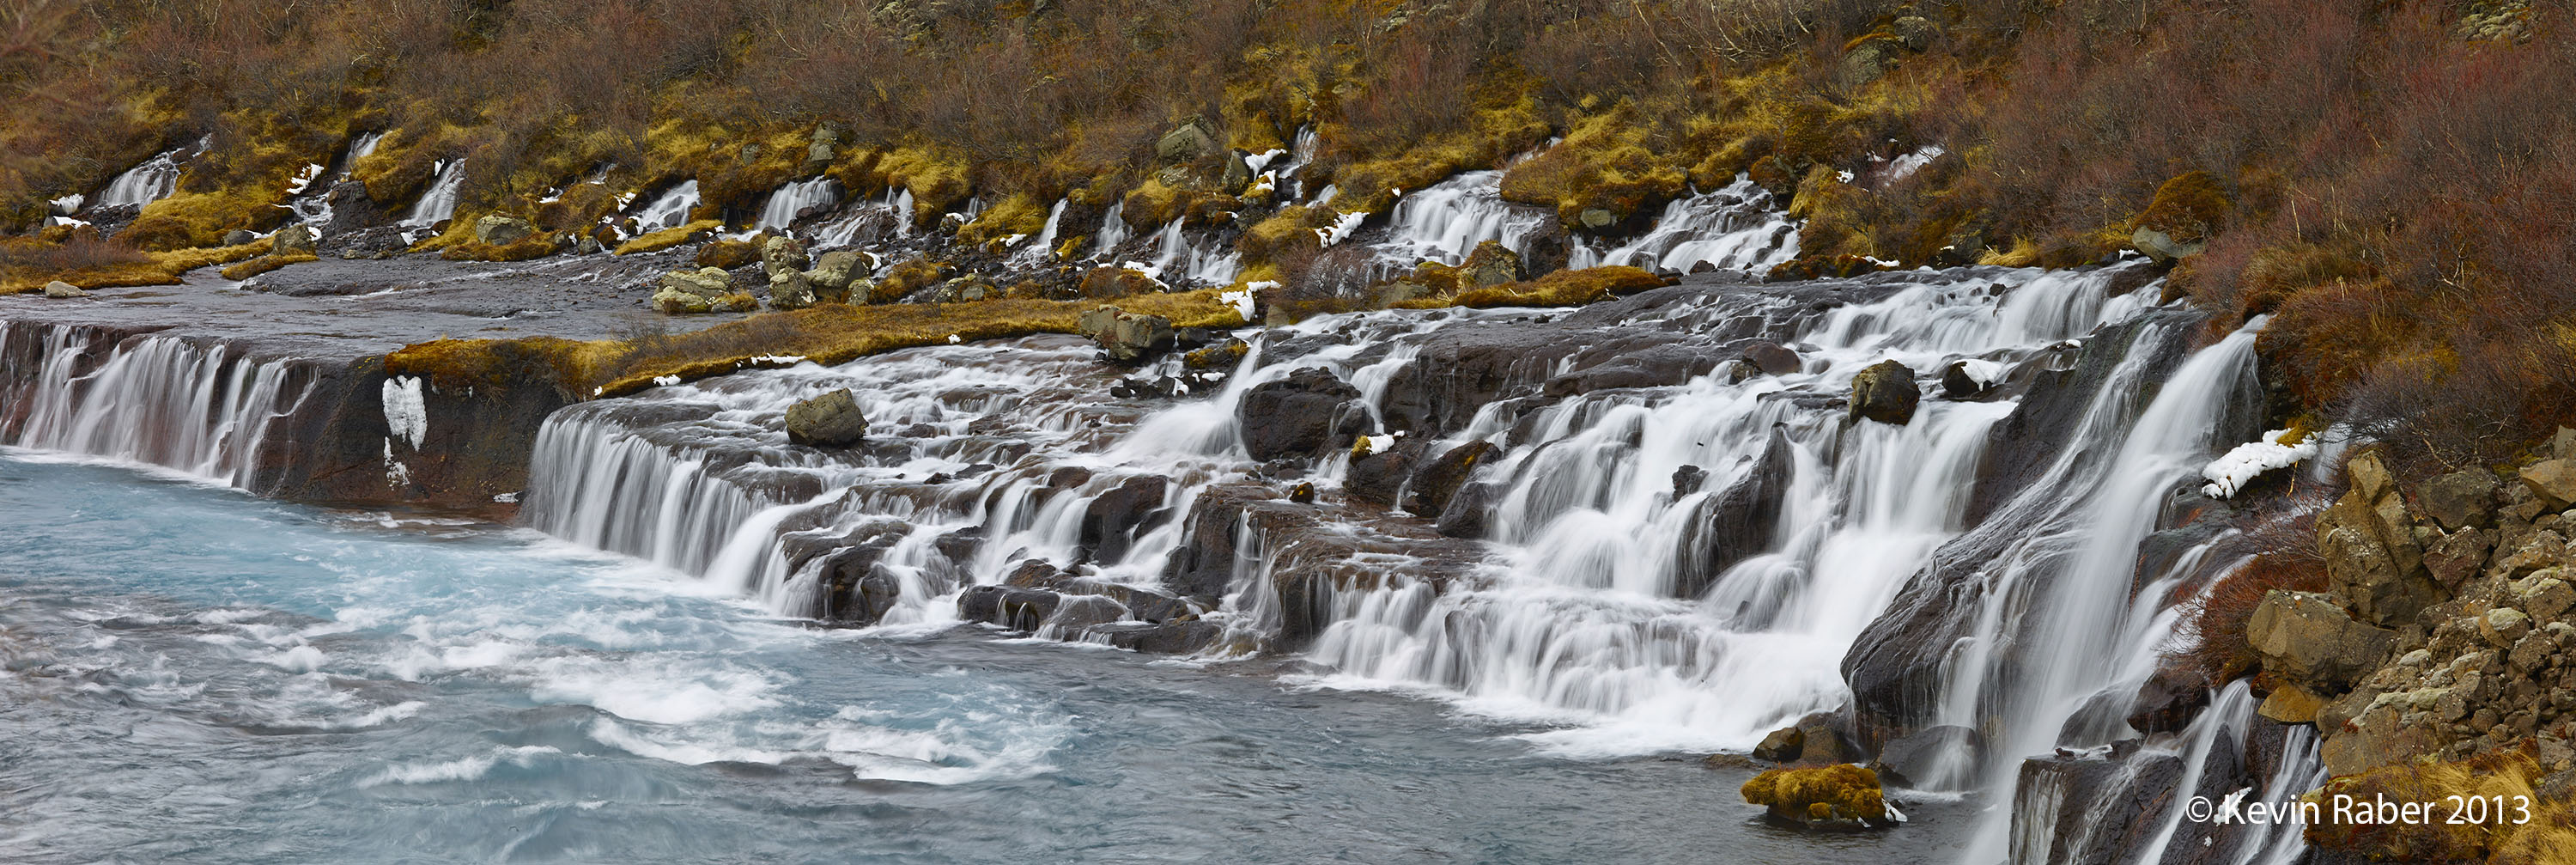 The Hraunfossar Falls